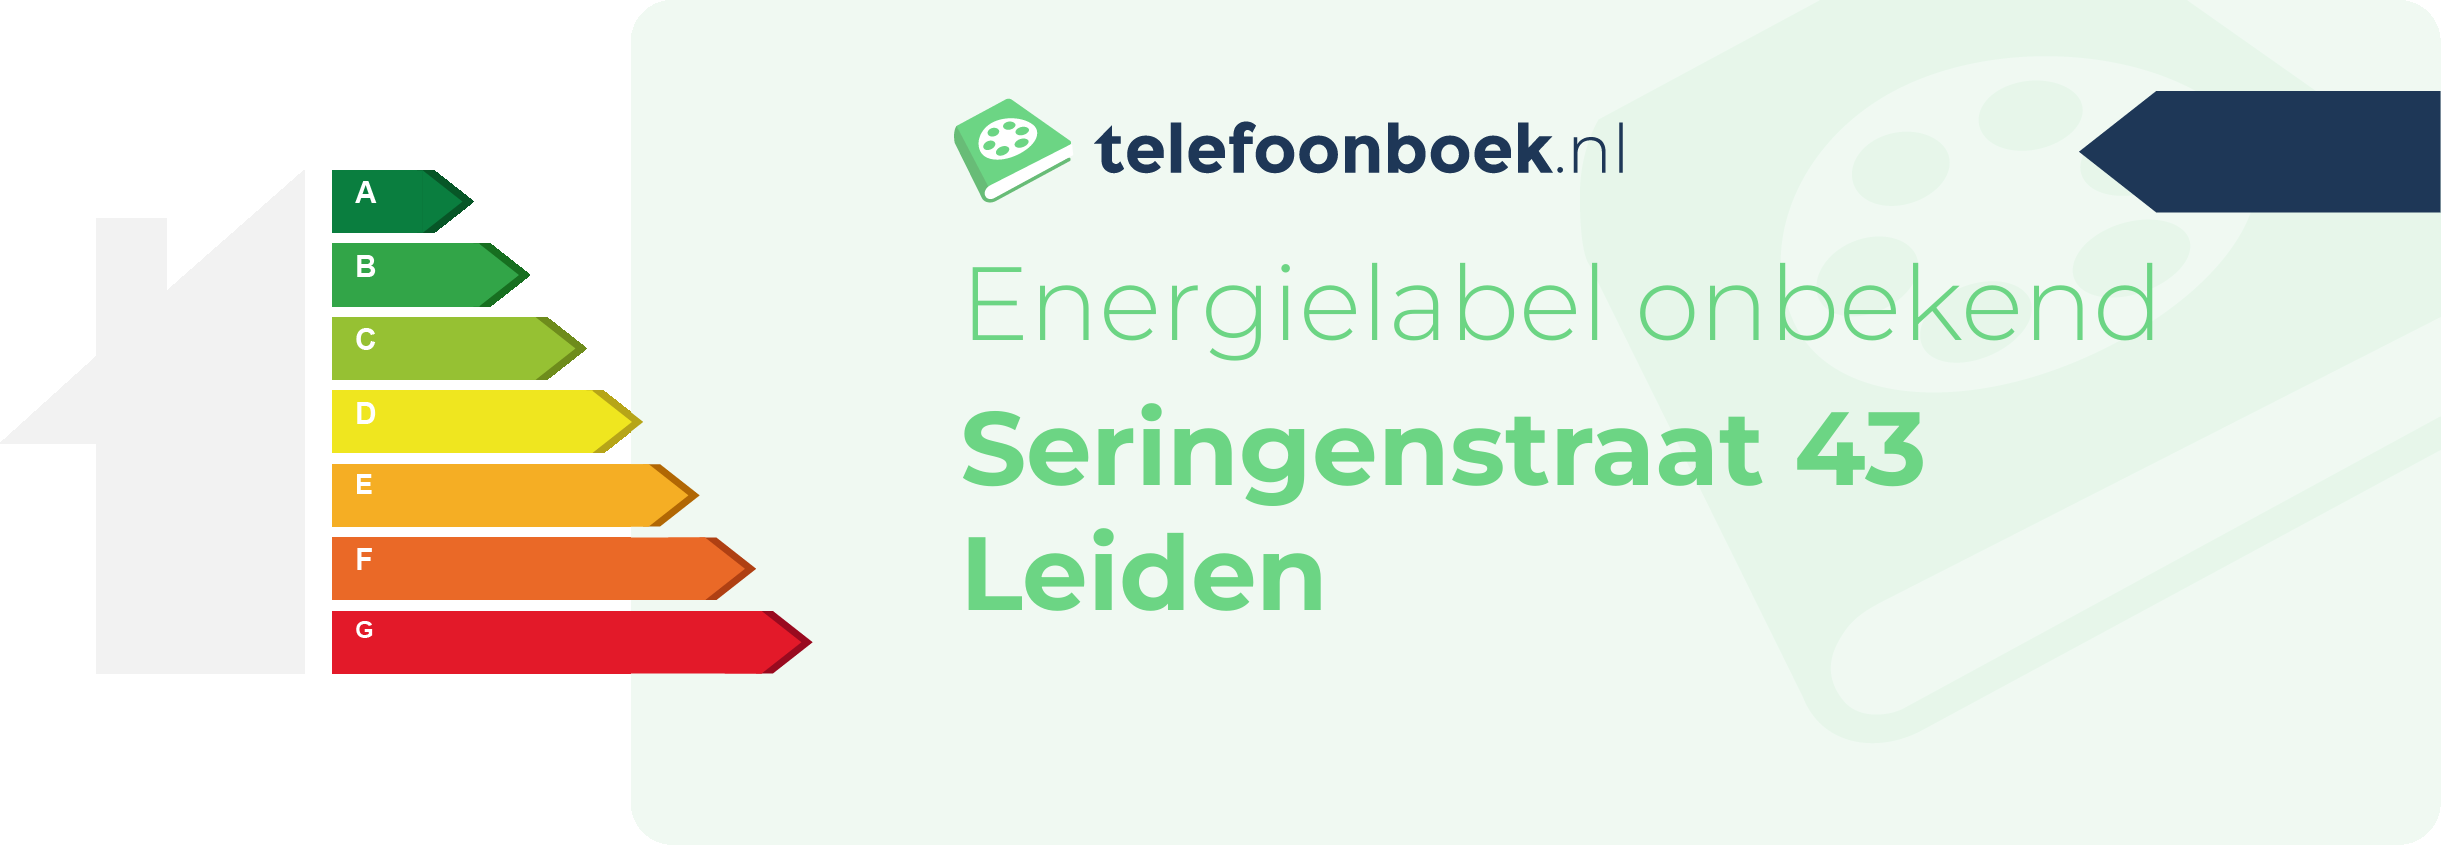 Energielabel Seringenstraat 43 Leiden